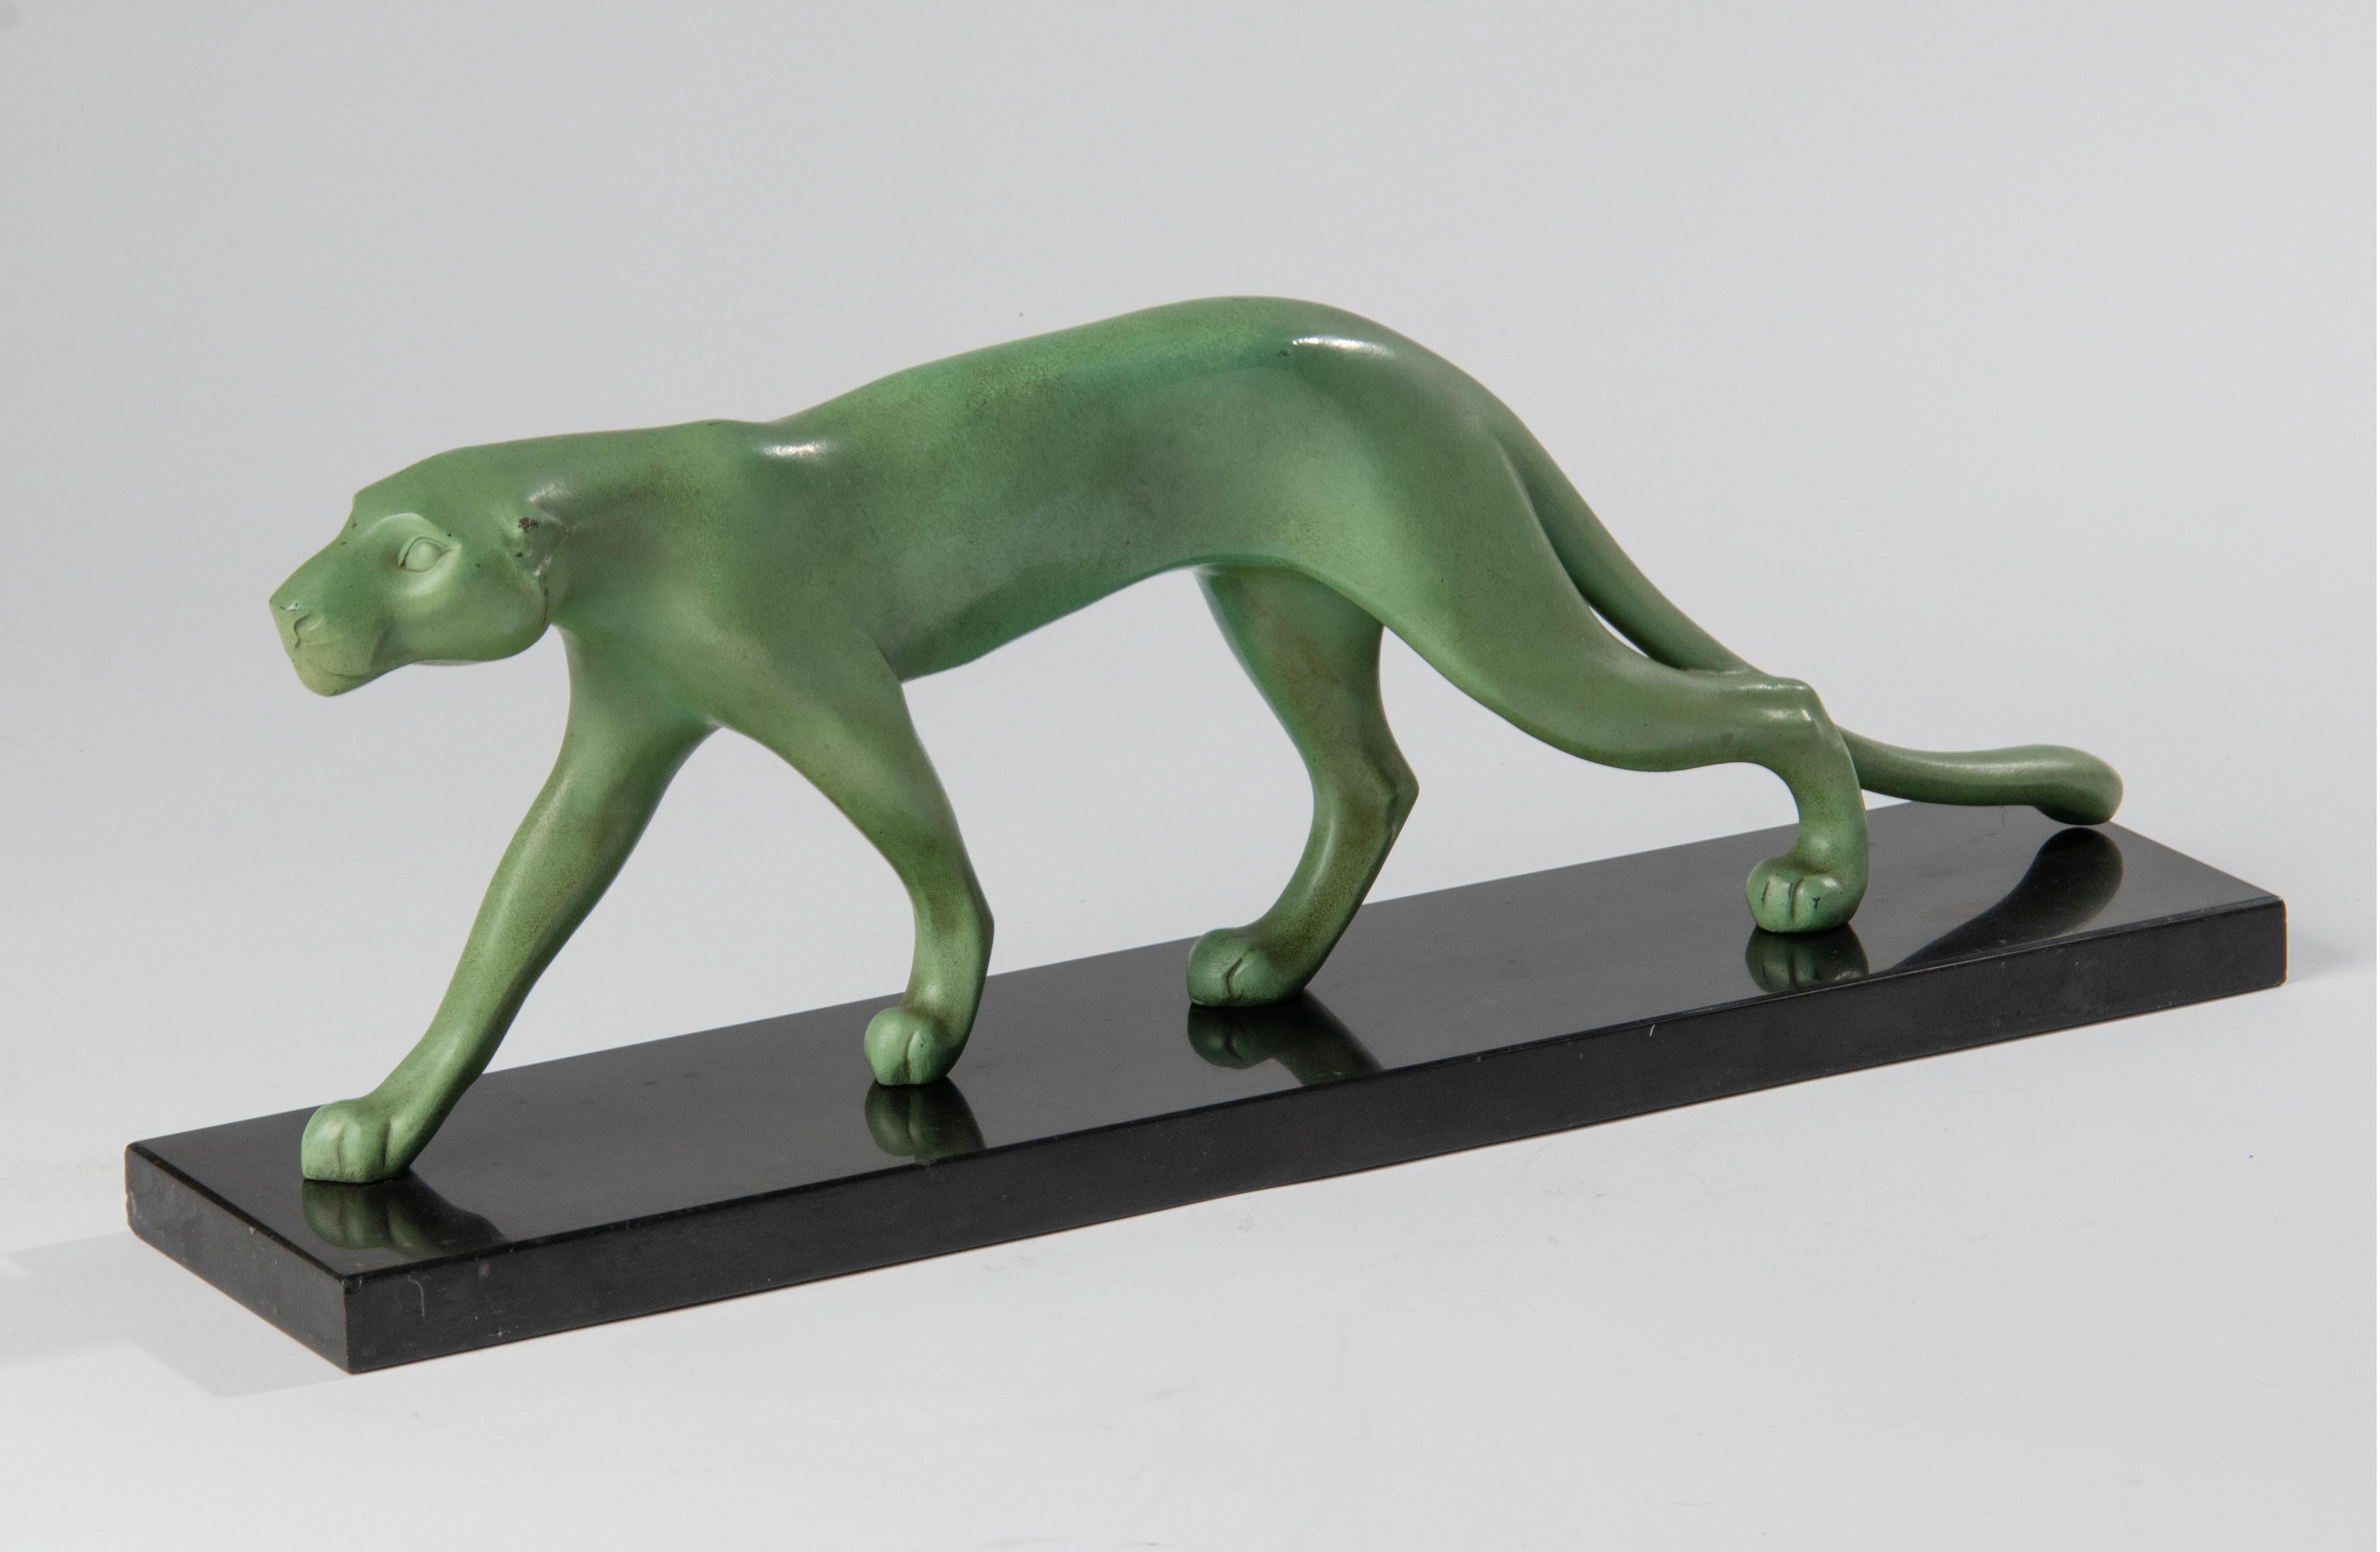 Eine schöne stilisierte Art-Deco-Skulptur eines Pumas, hergestellt aus grün patiniertem Zinn. Auf einem Sockel aus schwarzem belgischem Marmor. Hergestellt in Frankreich oder Belgien um 1910-1930. Sie hat keine Unterschrift.
Abmessungen: 17 (H) x